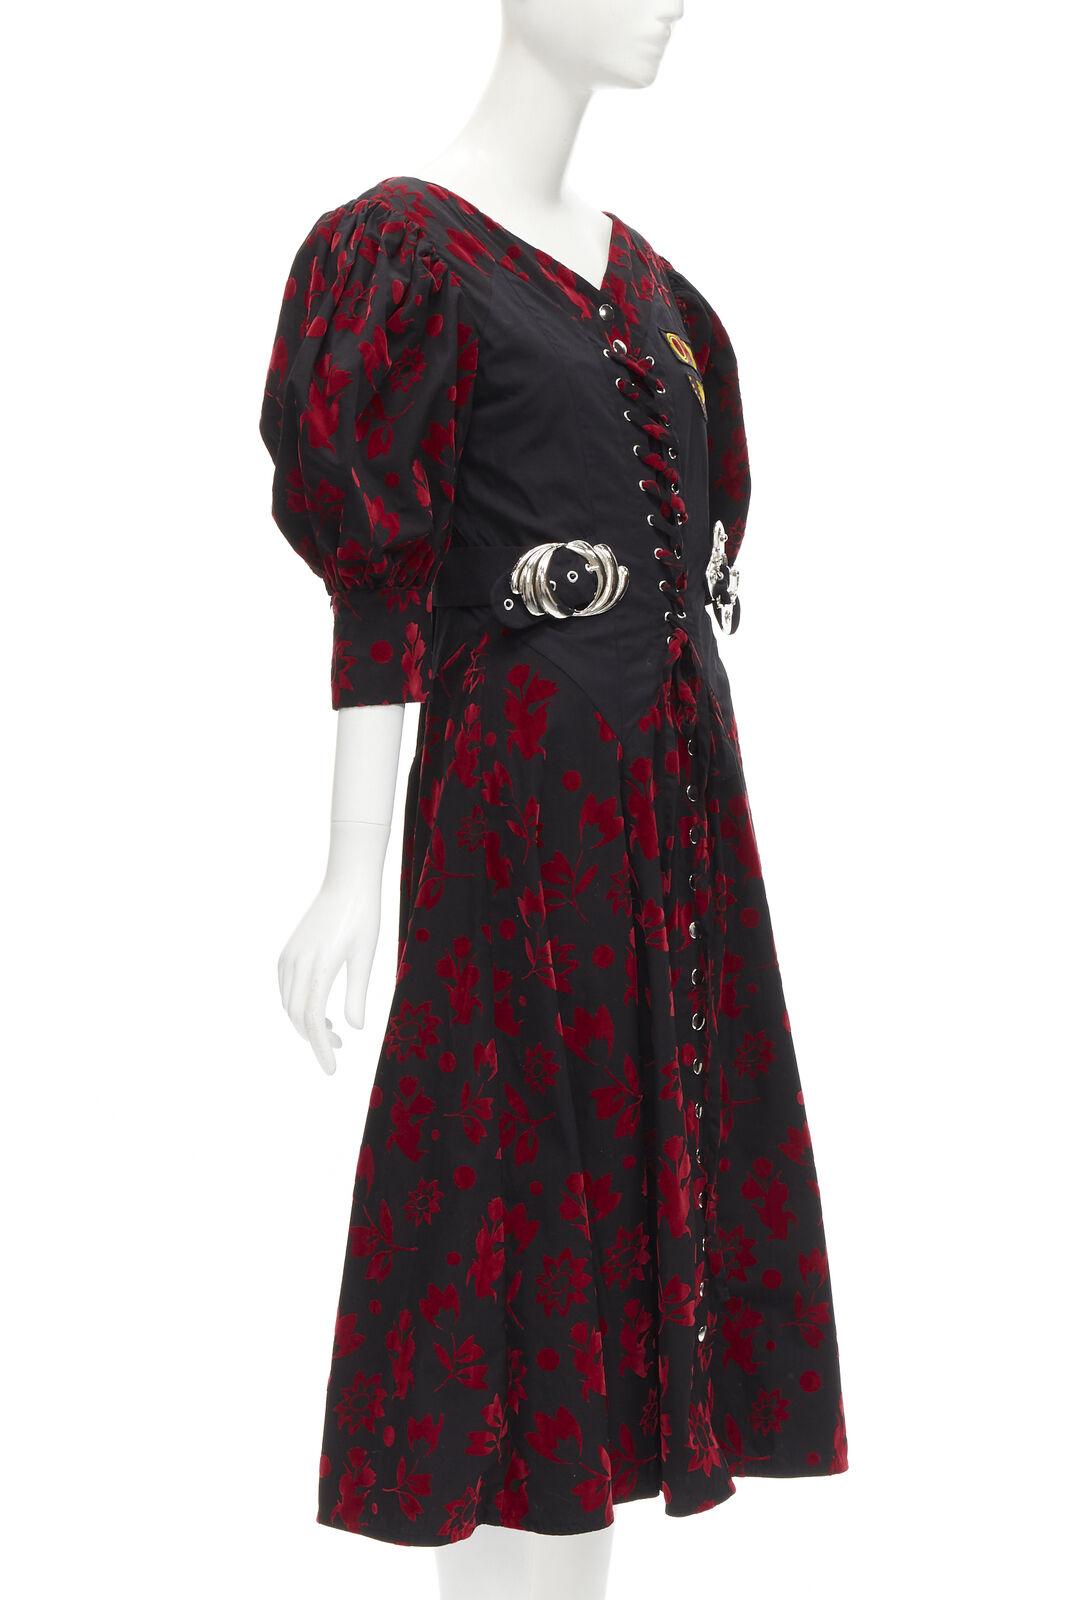 Noir CHOPOVA LOWENA - Robe corset victorienne noire en velours rouge à crochet papillons floraux S en vente